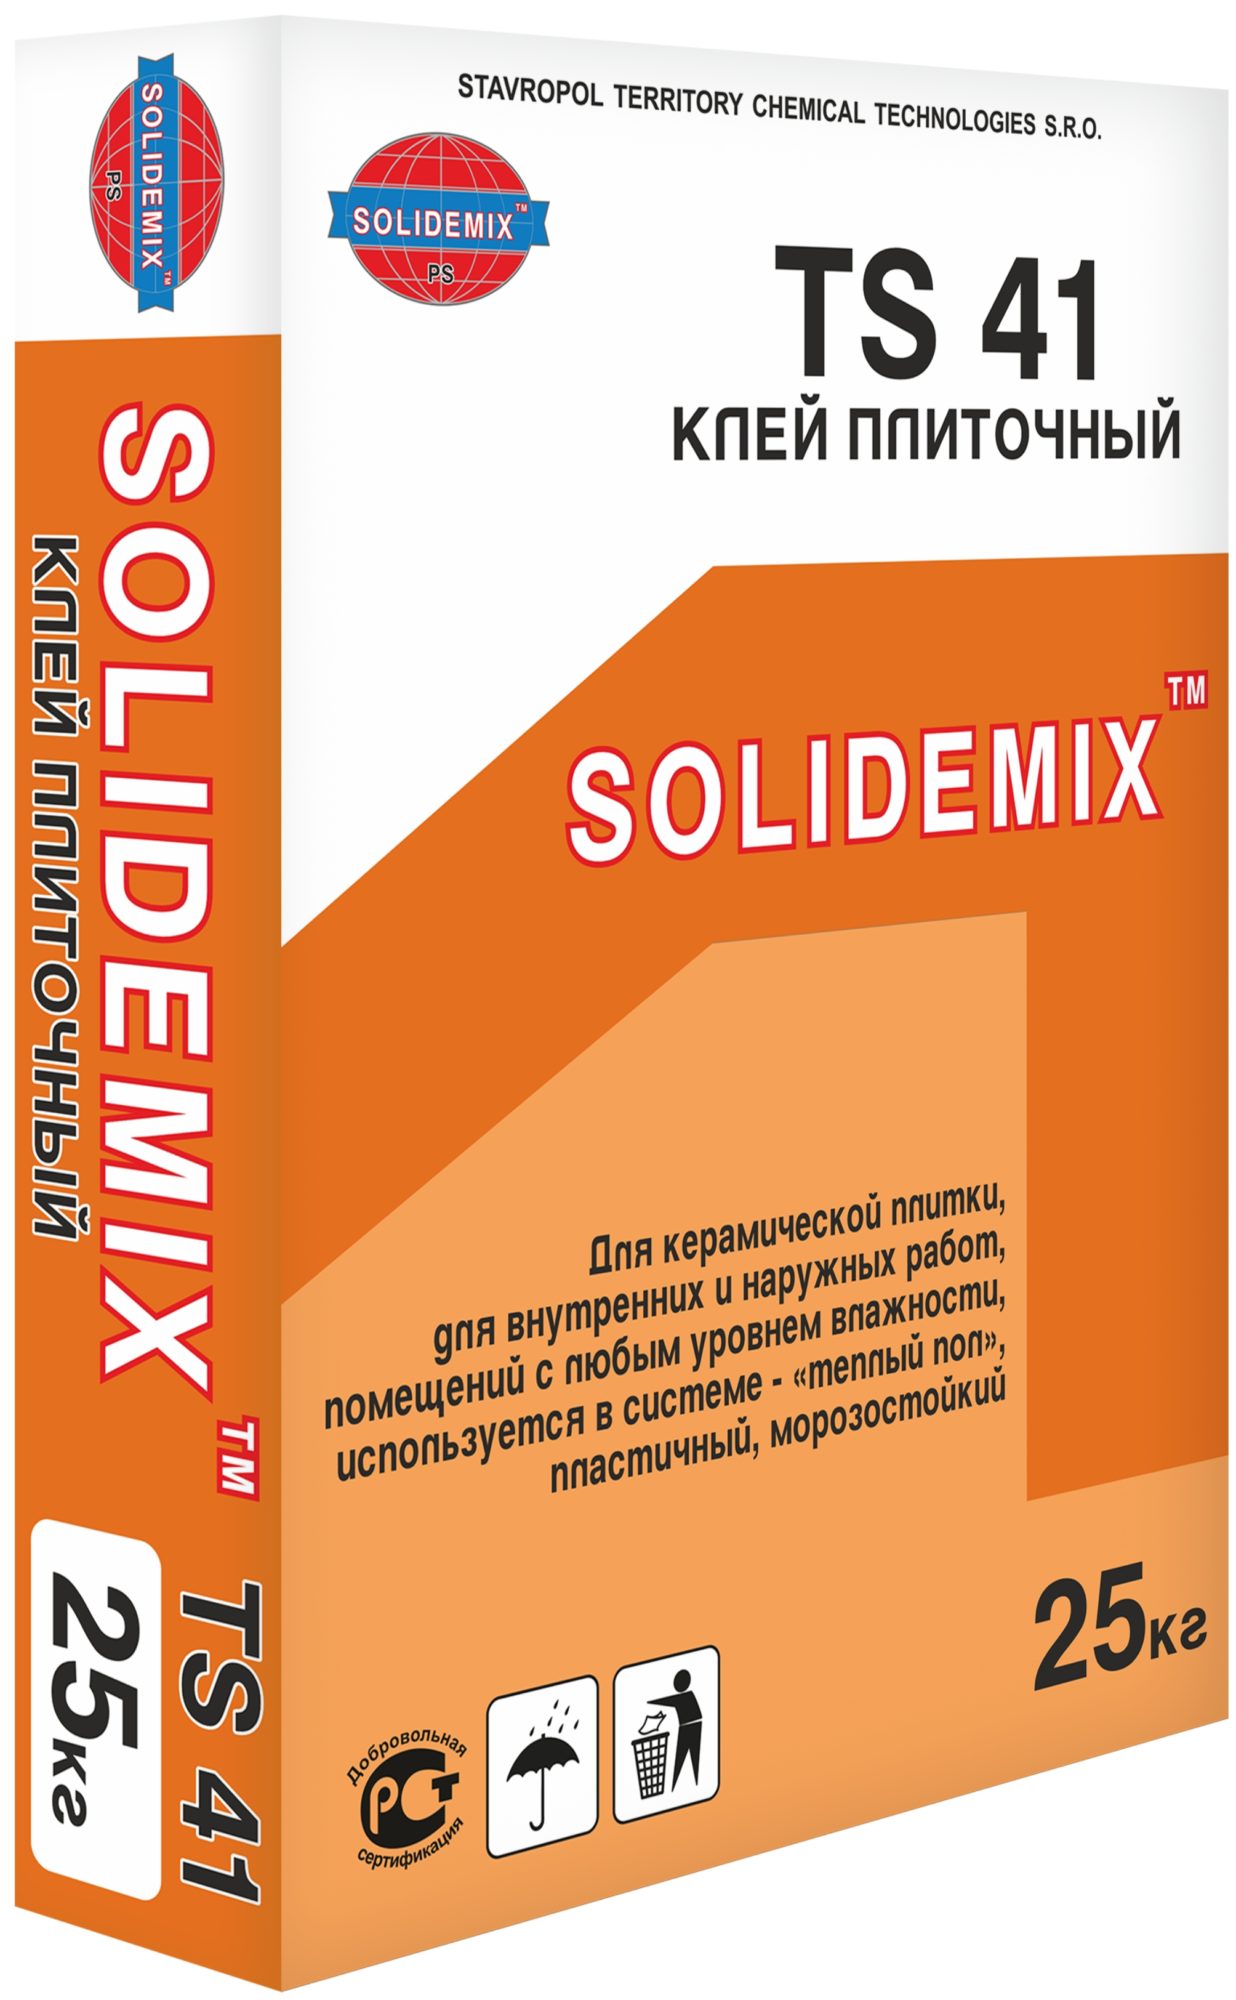 Купить Клей плиточный TS 41 от SOLIDEMIX